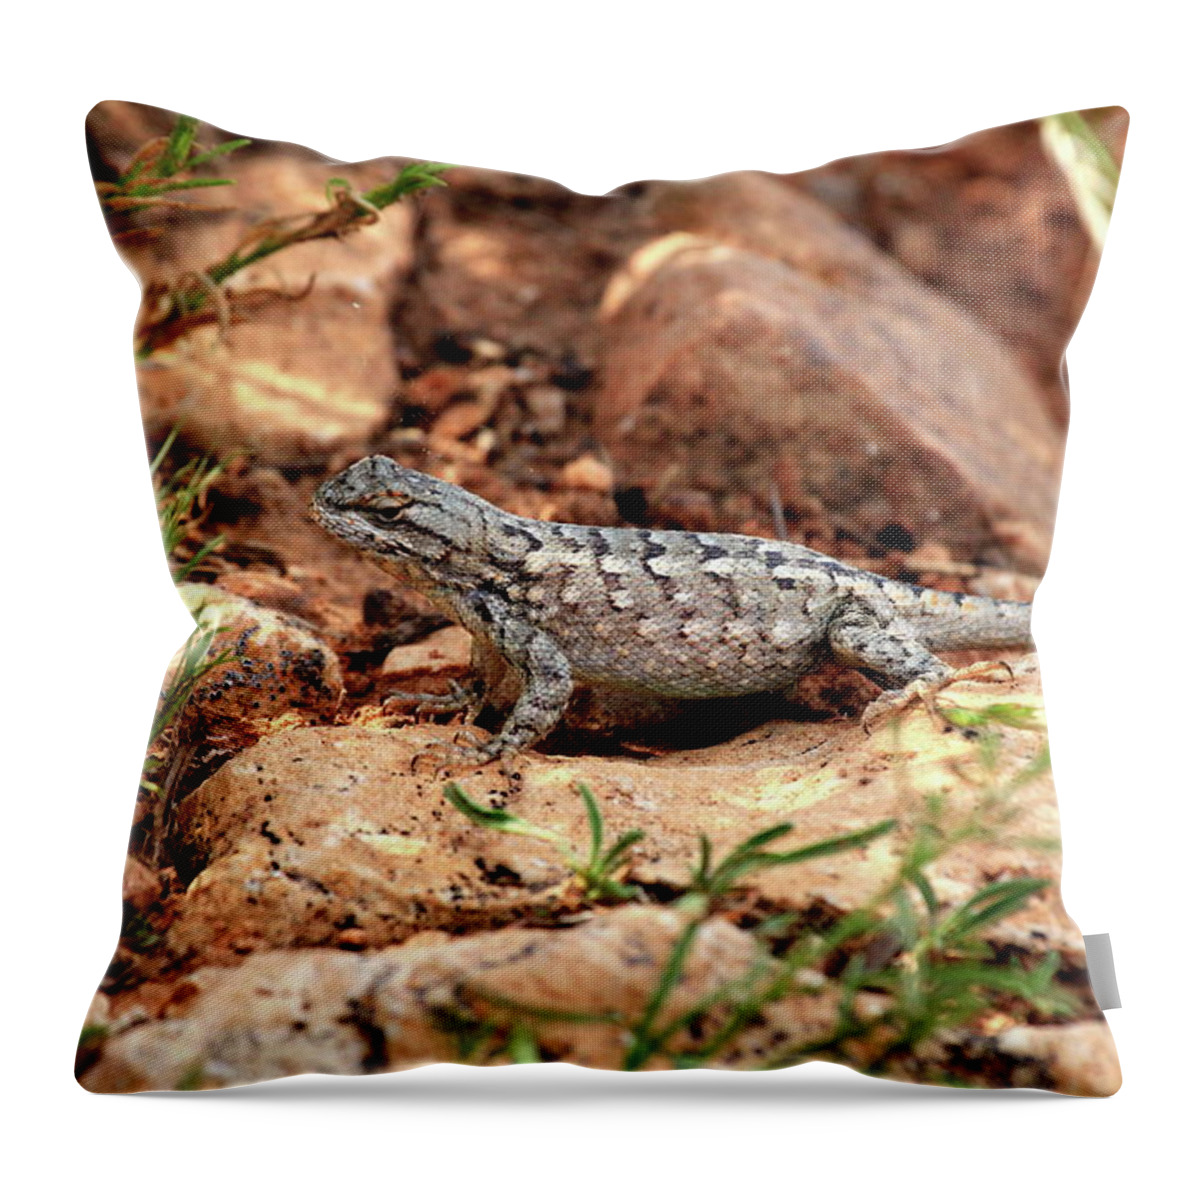 Wild Throw Pillow featuring the photograph Prairie Lizard by Trent Mallett